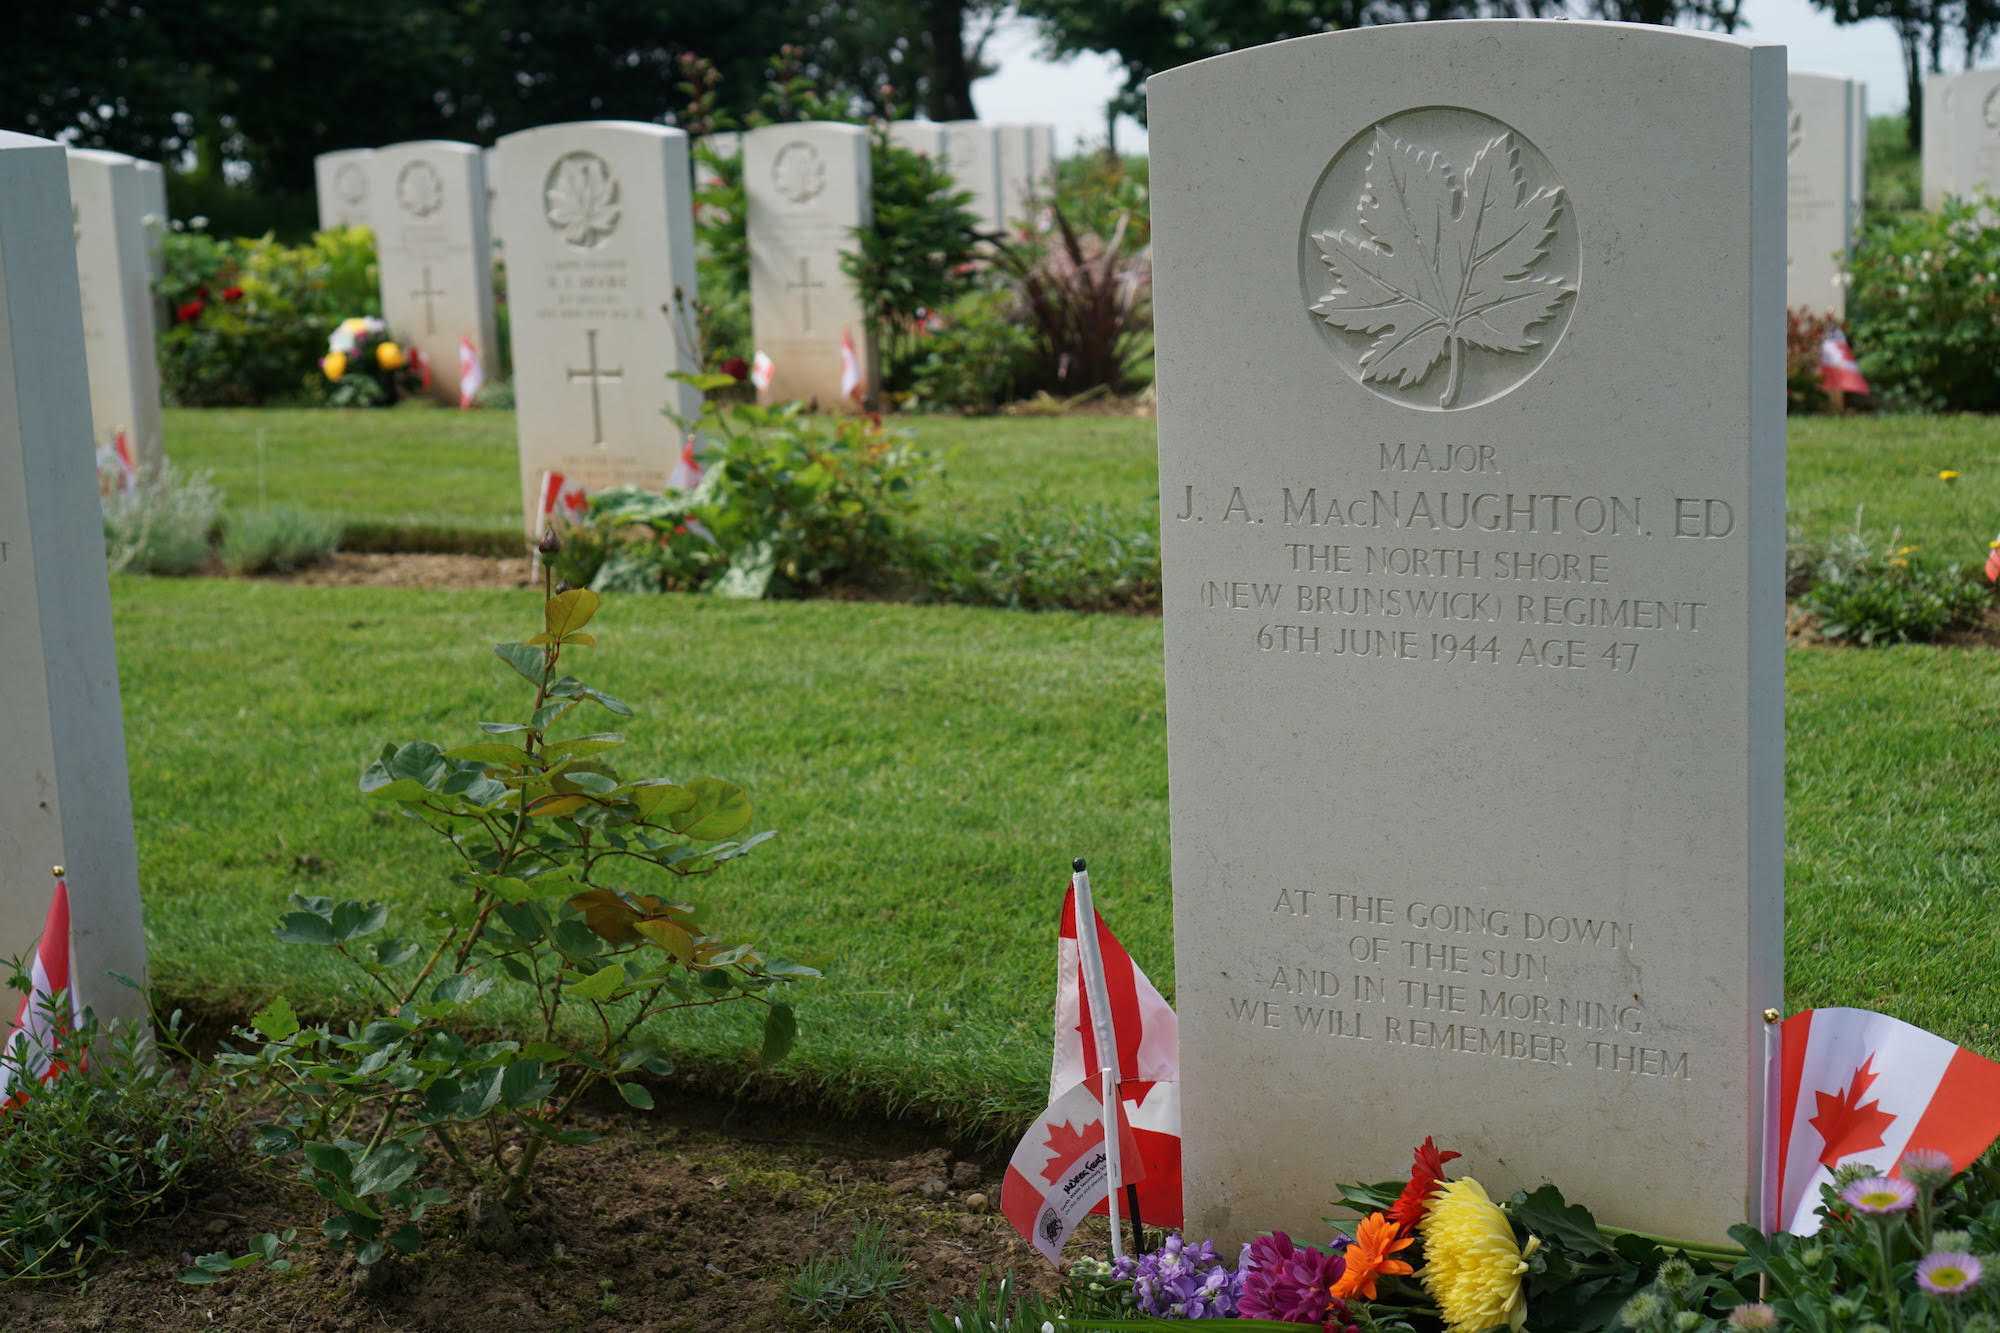 Photographie en couleur – La tombe d’Archie, au cimetière militaire canadien de Bény-sur-Mer. Des fleurs et de petits drapeaux canadiens sont plantés au pied de la tombe.